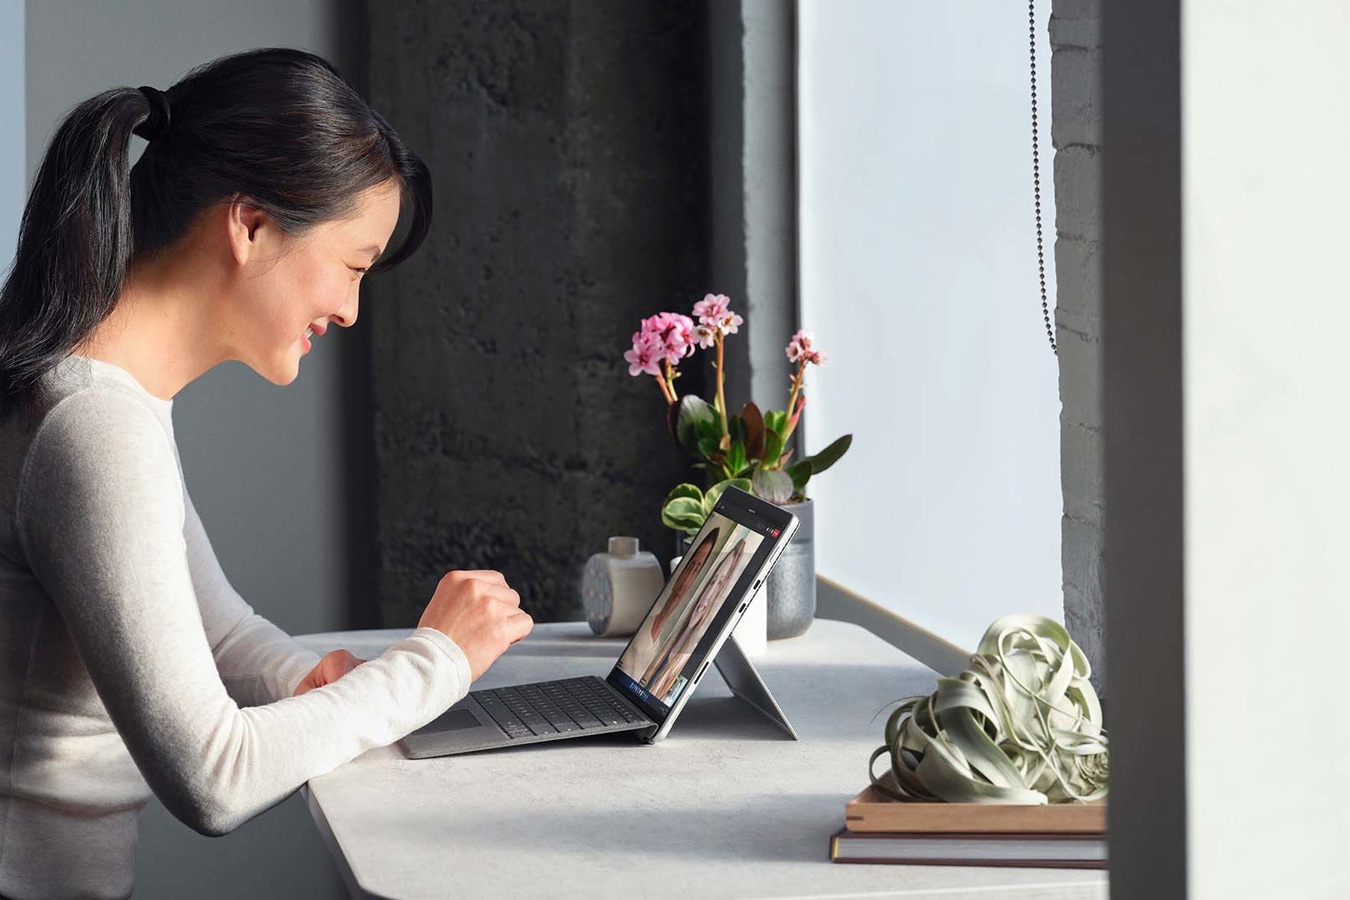 คนคนหนึ่งกำลังสนทนาผ่าน Microsoft Teams จากอุปกรณ์ Surface Pro 8 ในการตั้งค่าการทำงานจากระยะไกล